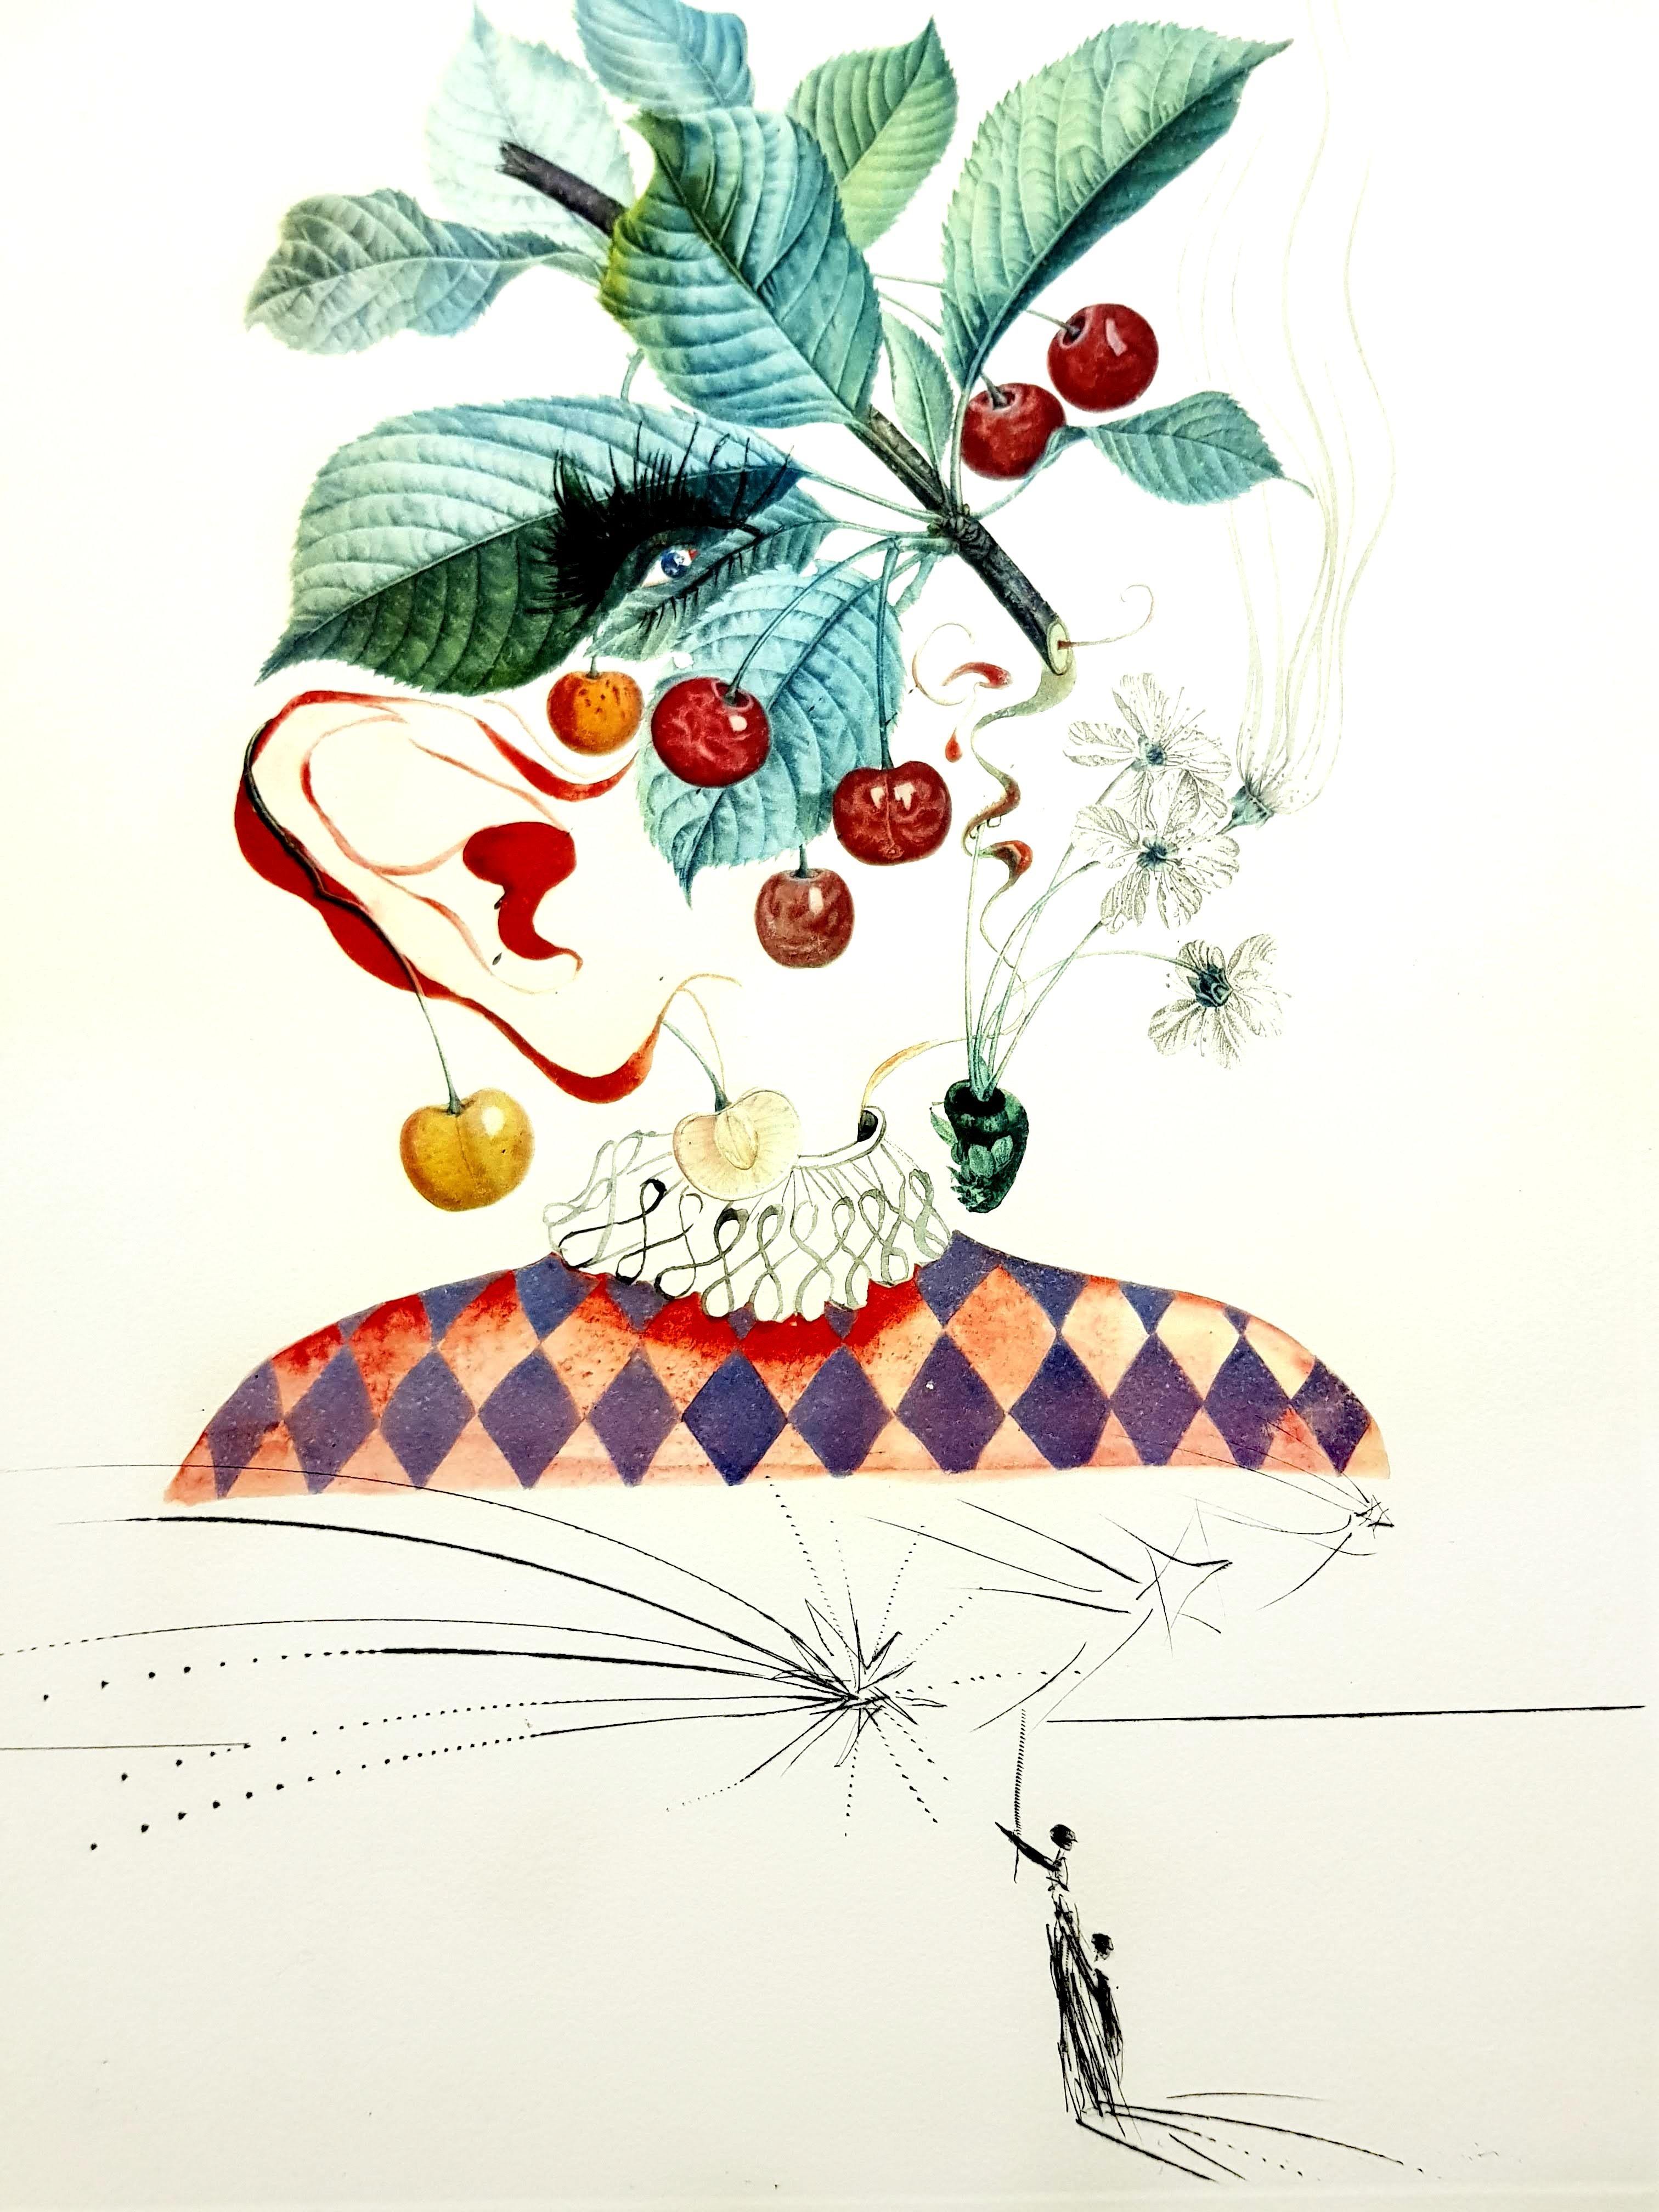 Salvador Dali - Kirschen - Original Handsignierte Lithographie
Abmessungen: S. 57 x 37 cm
Blatt: 75 x 56 cm 
Handsigniert
Ausgabe: EG.d  (Mitarbeiterausgabe 